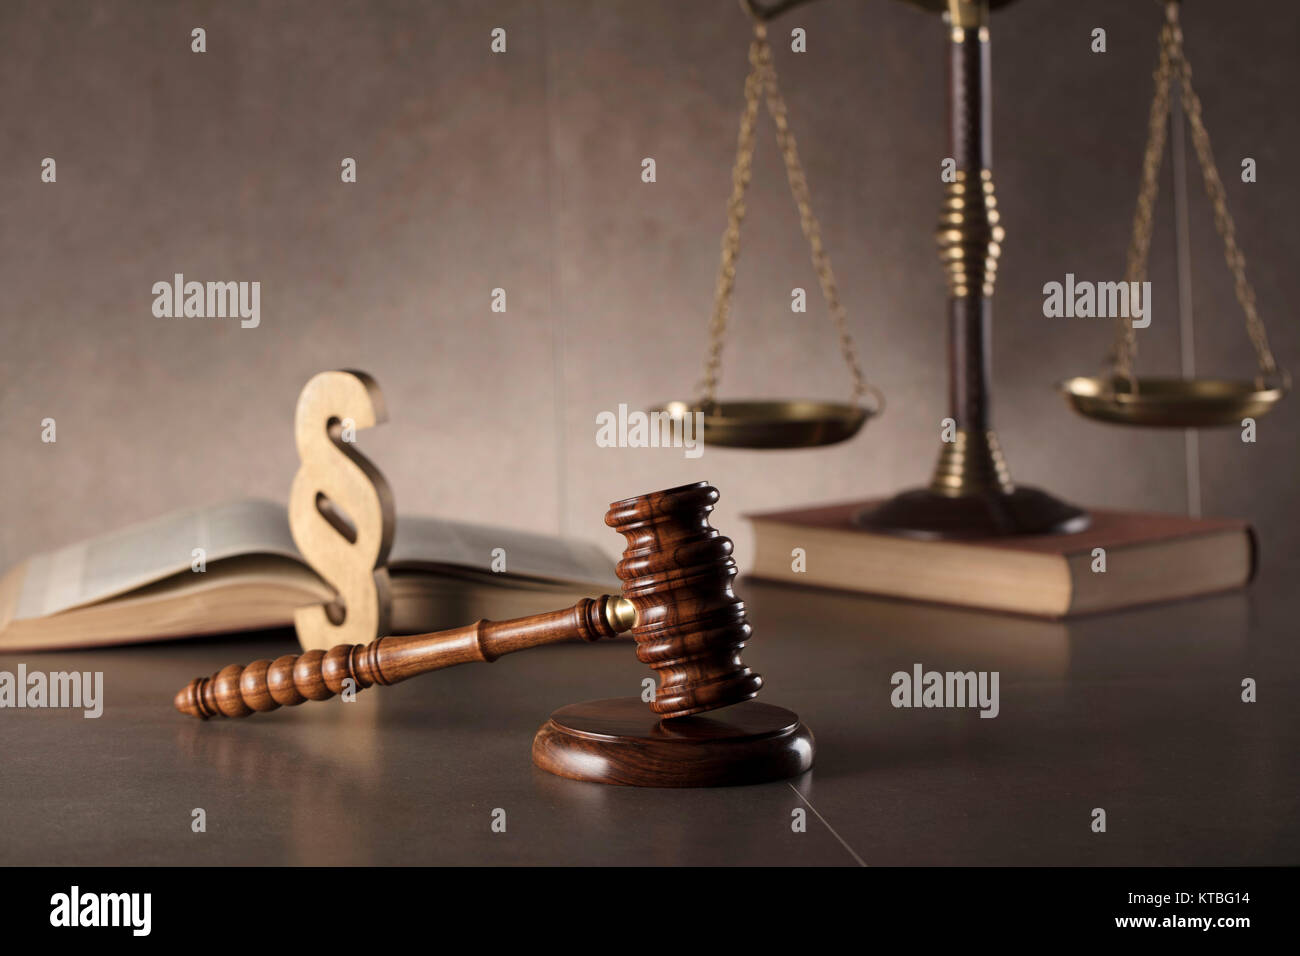 Ancien juge gavel,scale, réserver et paragraph sign - droit des symboles sur table en pierre et l'arrière-plan. Banque D'Images